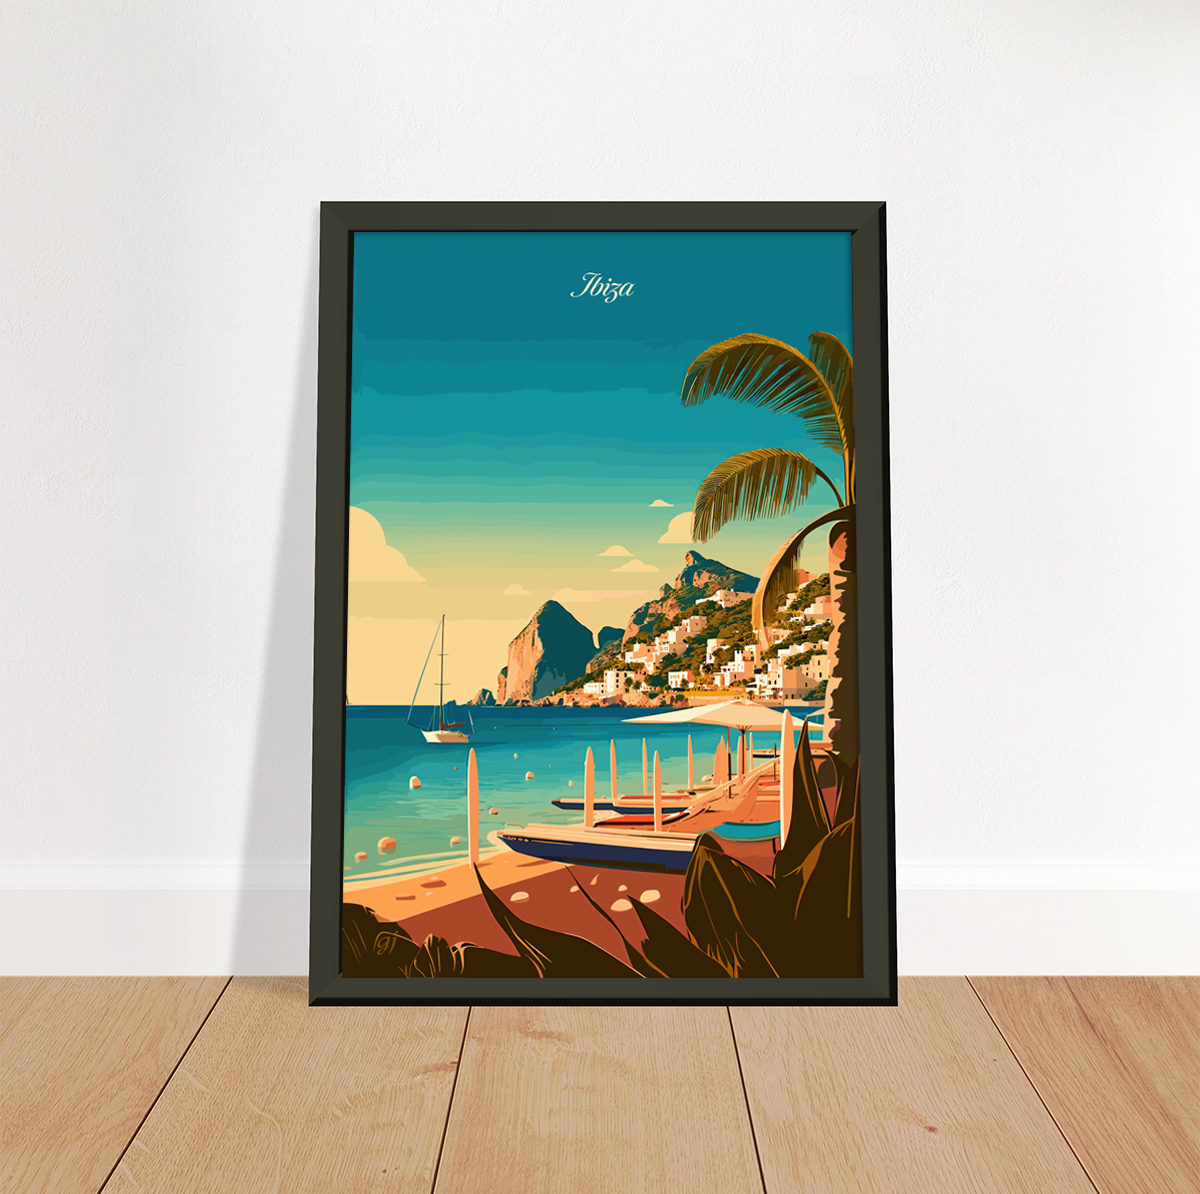 Ibiza poster by bon voyage design